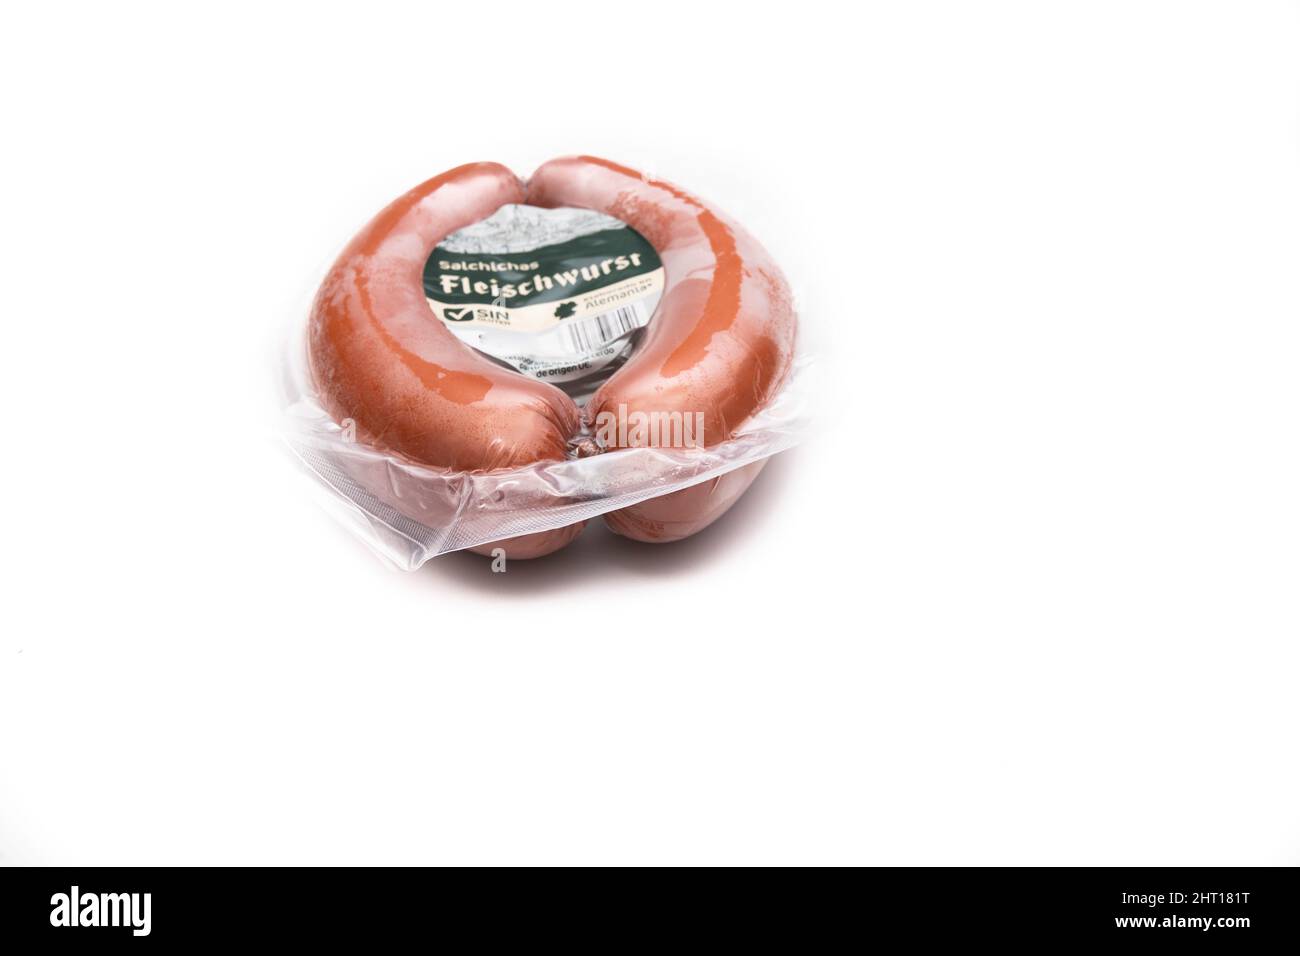 Abgepackte Fleischwurst, Deutsche Wurst. Isoliert auf weißem Hintergrund. Deutsches Lebensmittelkonzept. Stockfoto